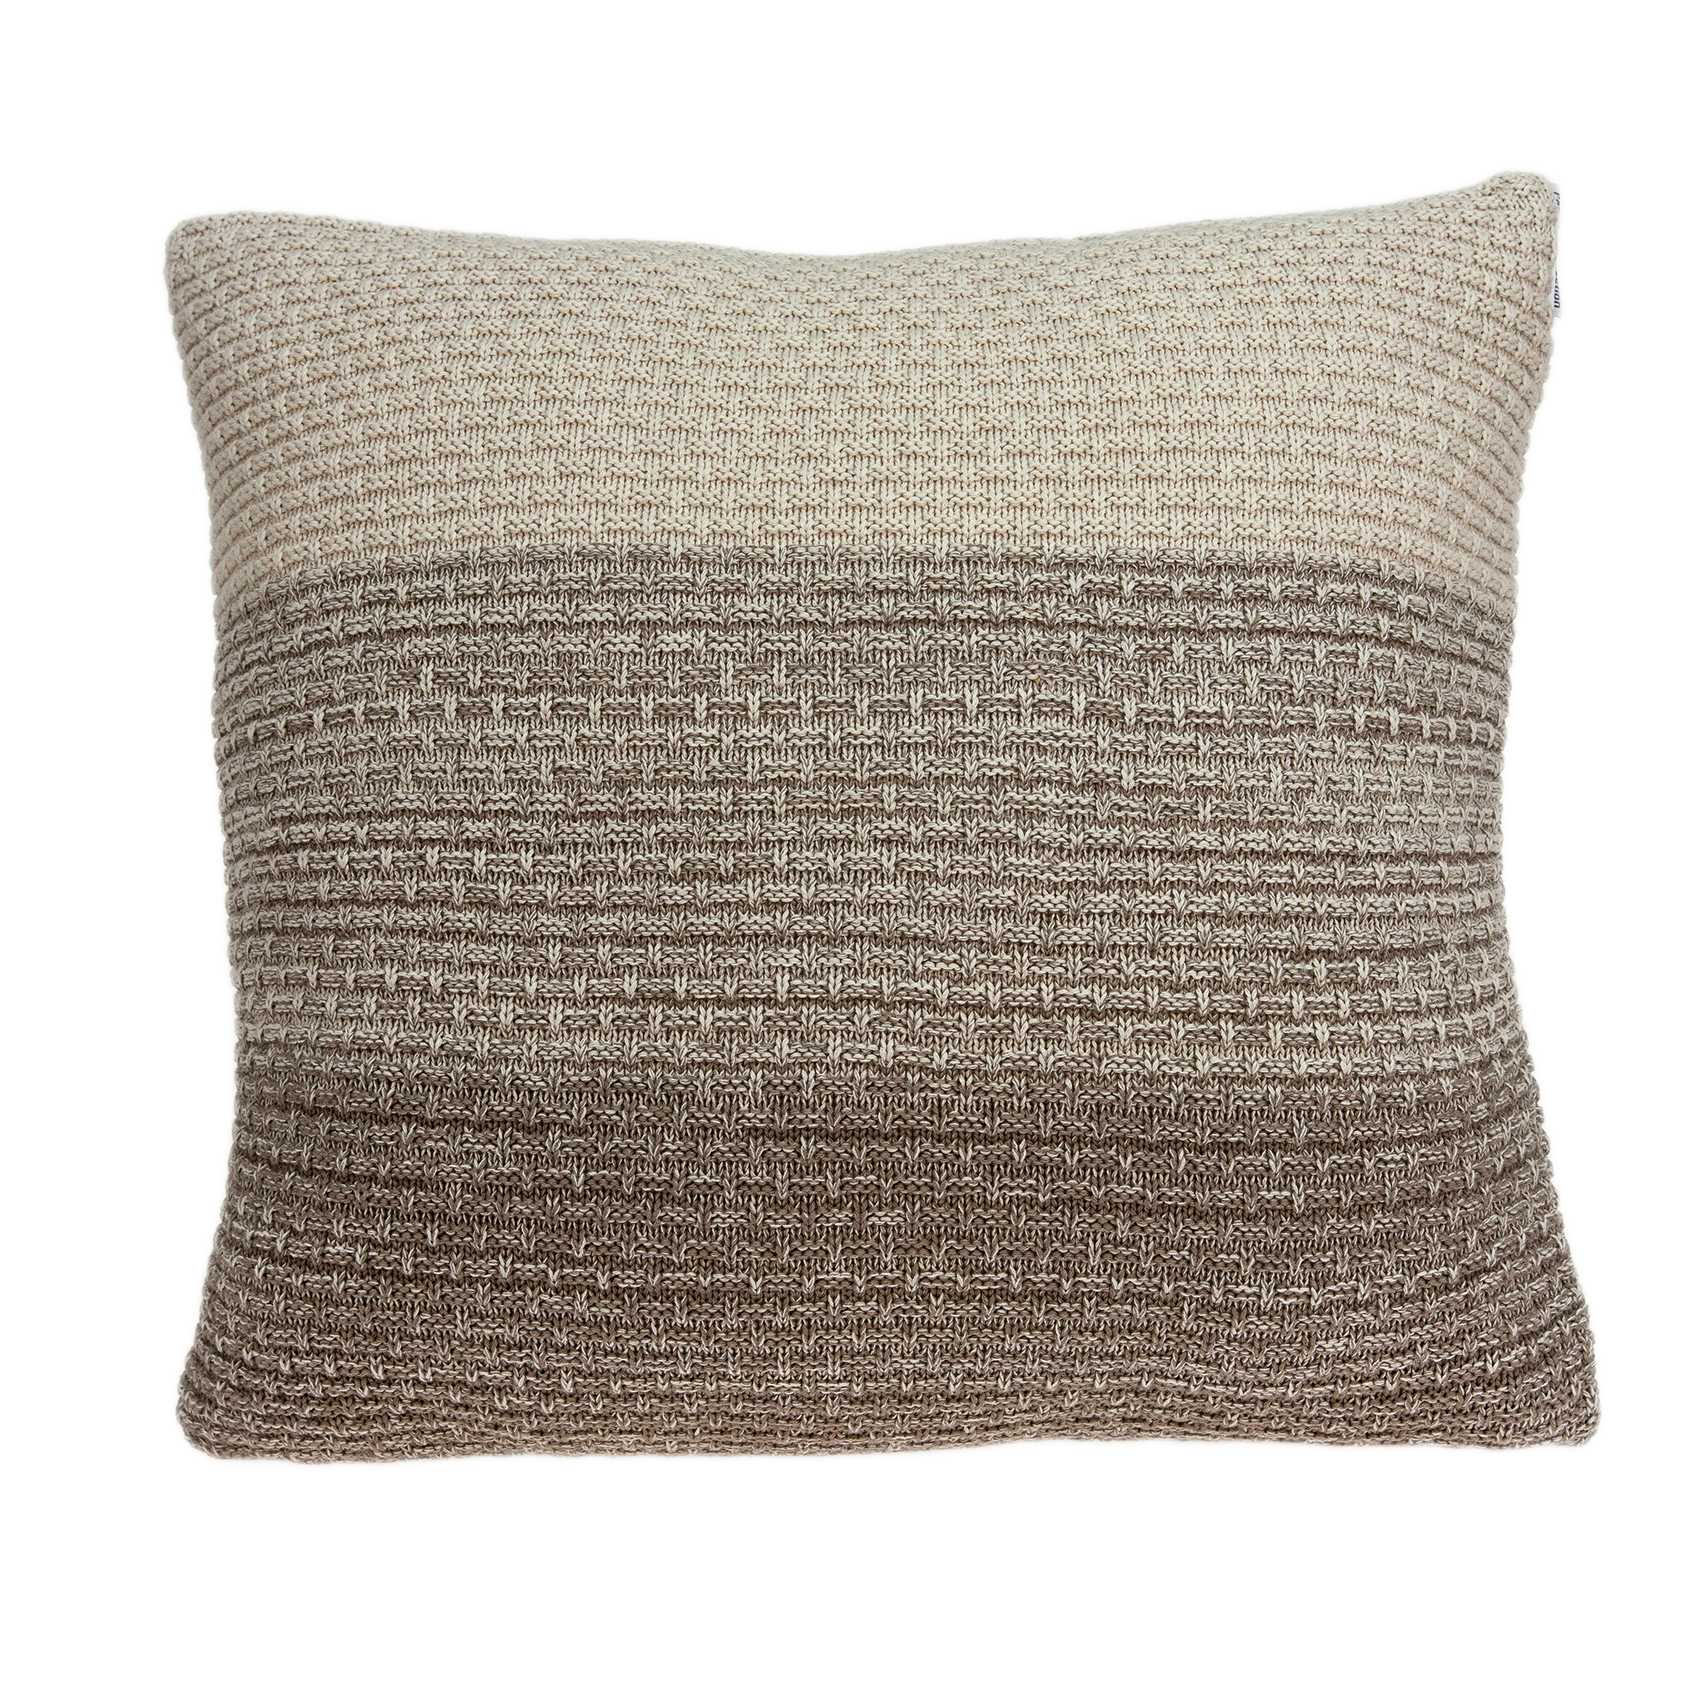 20" x 0.5" x 20" Unique Transitional Tan Cotton Accent Pillow Cover